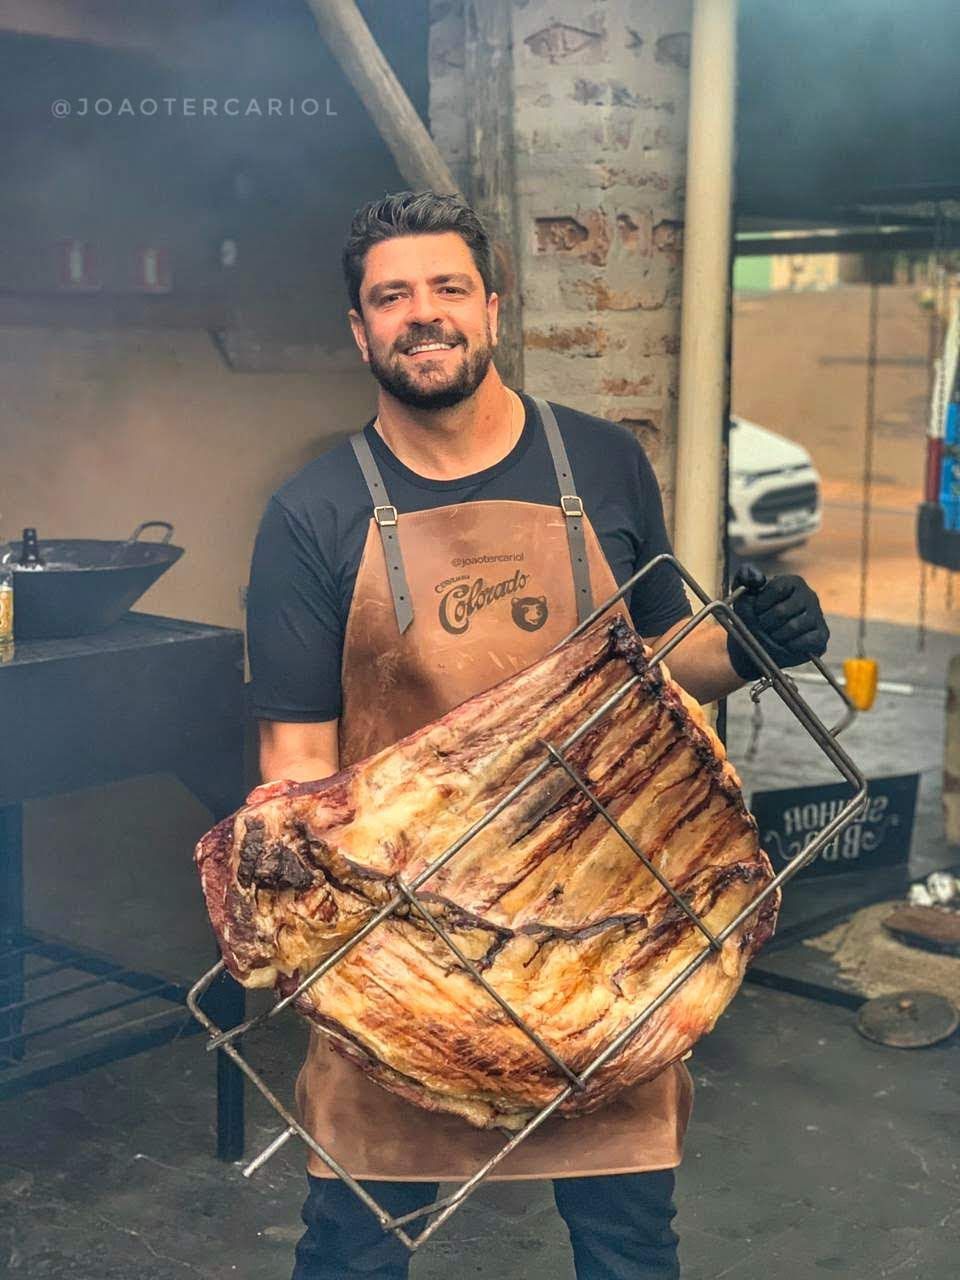 ‘Trabalhar com churrasco foi um acaso, mas hoje tenho a Senhor BBQ que me proporciona coisas incríveis’, diz João Paulo Terçariol